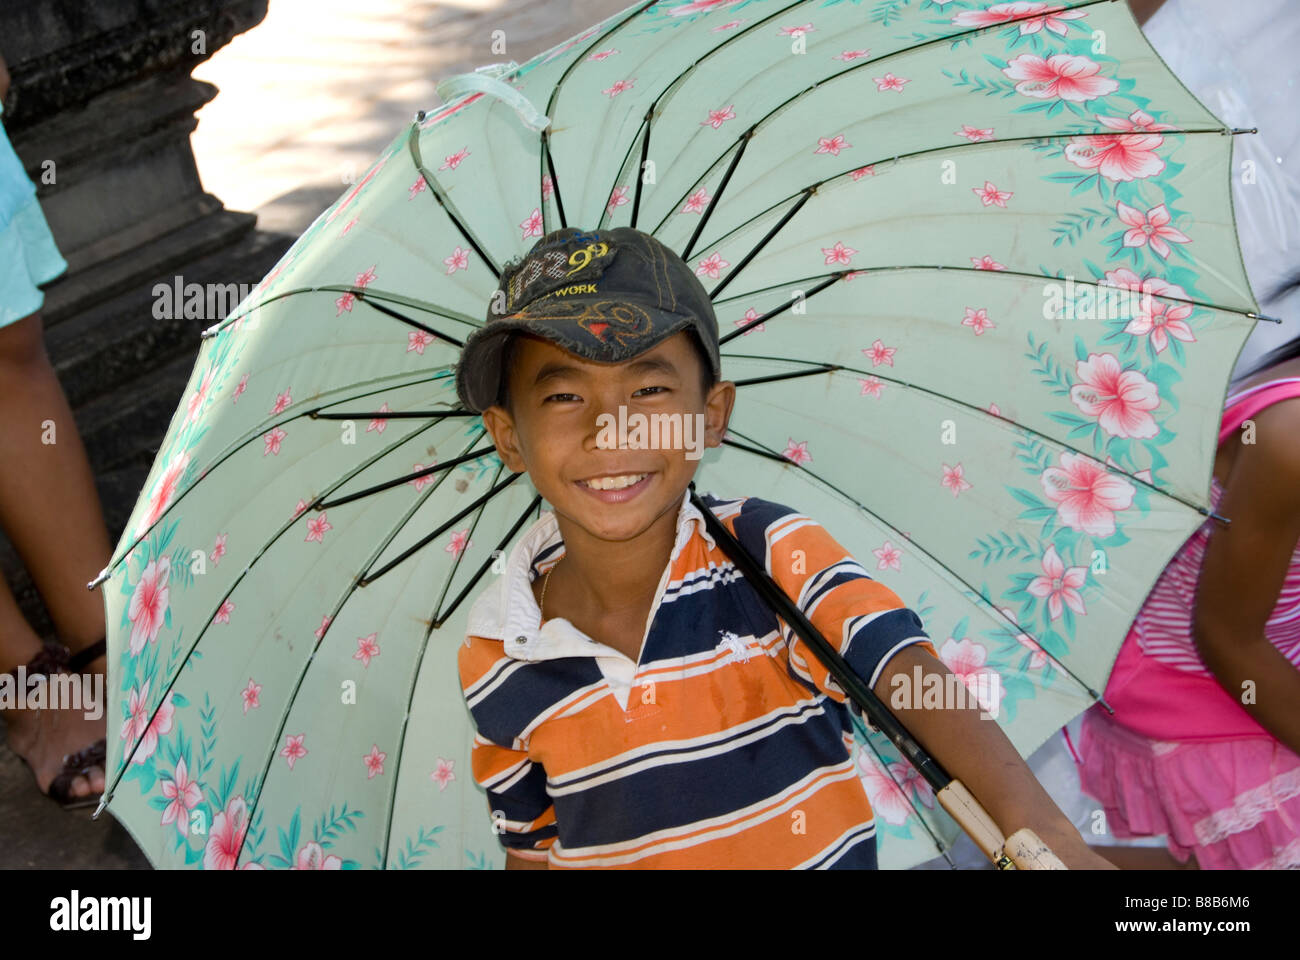 Junge mit bunten Regenschirm Stockfoto